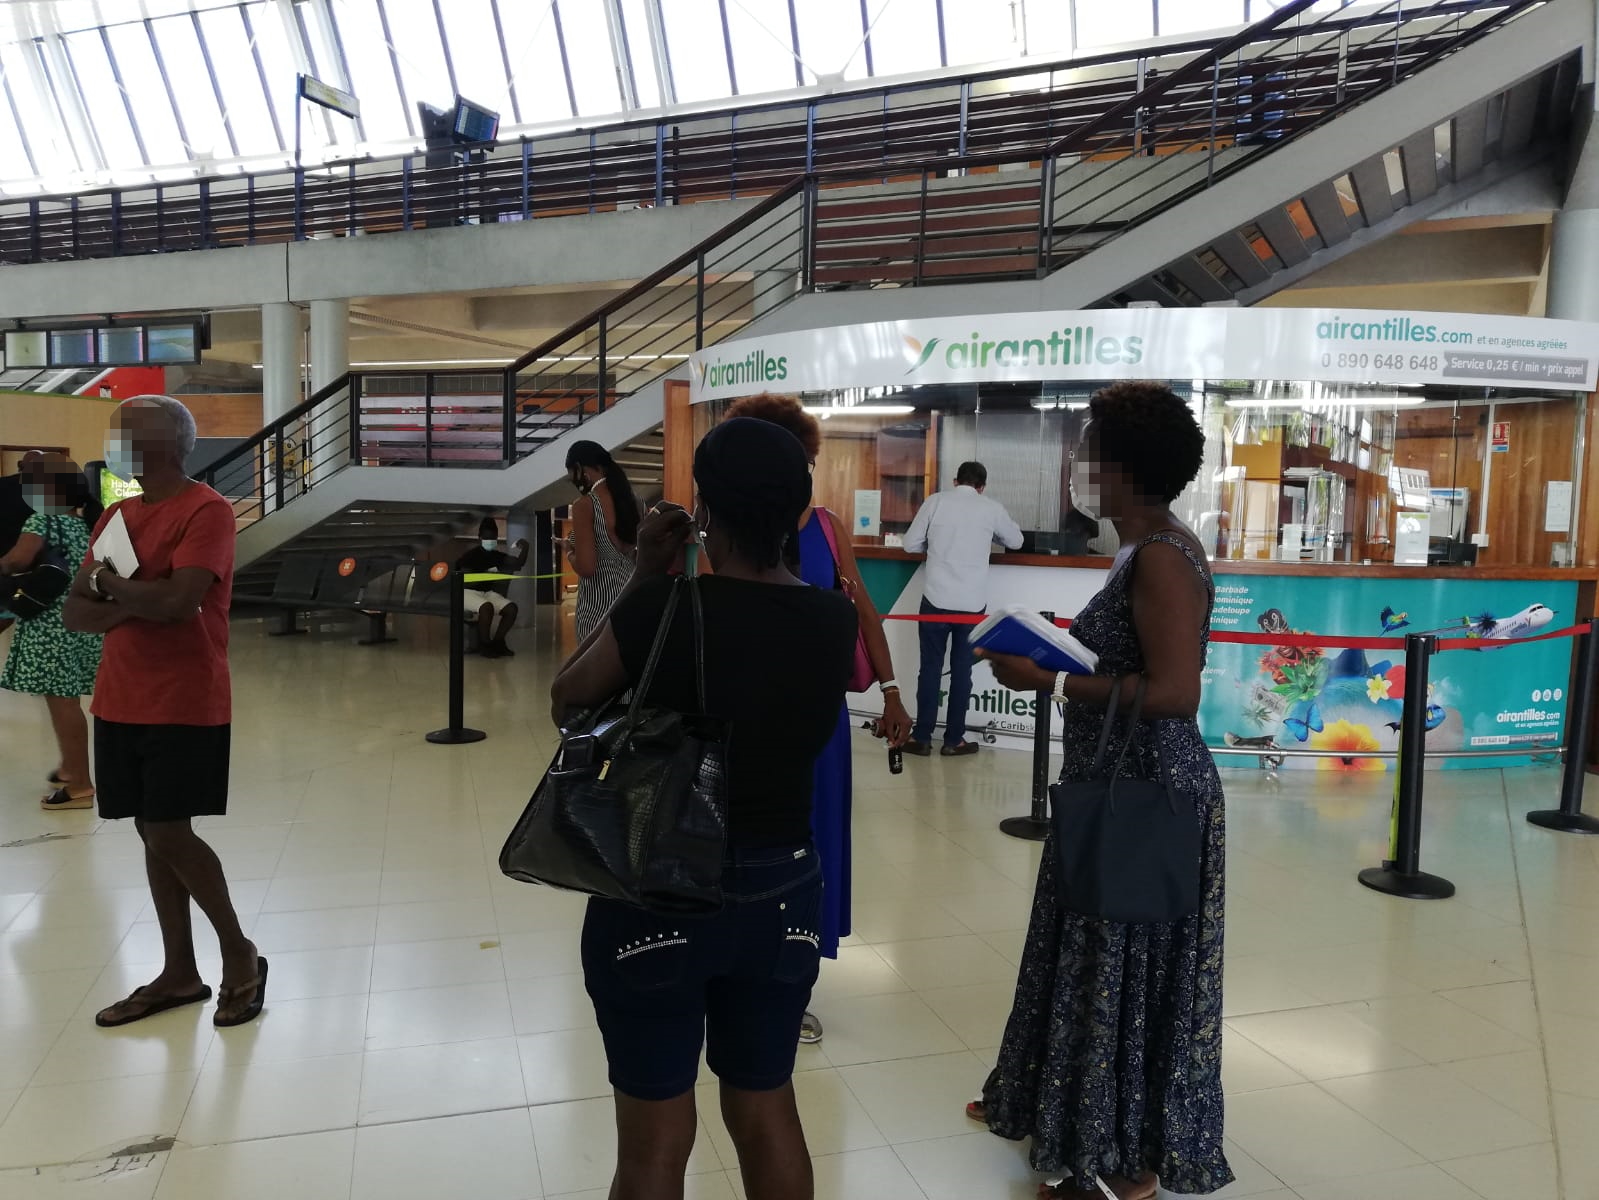     Cafouillage à l'Aéroport Martinique Aimé Césaire au sujet des tests PCR obligatoires

